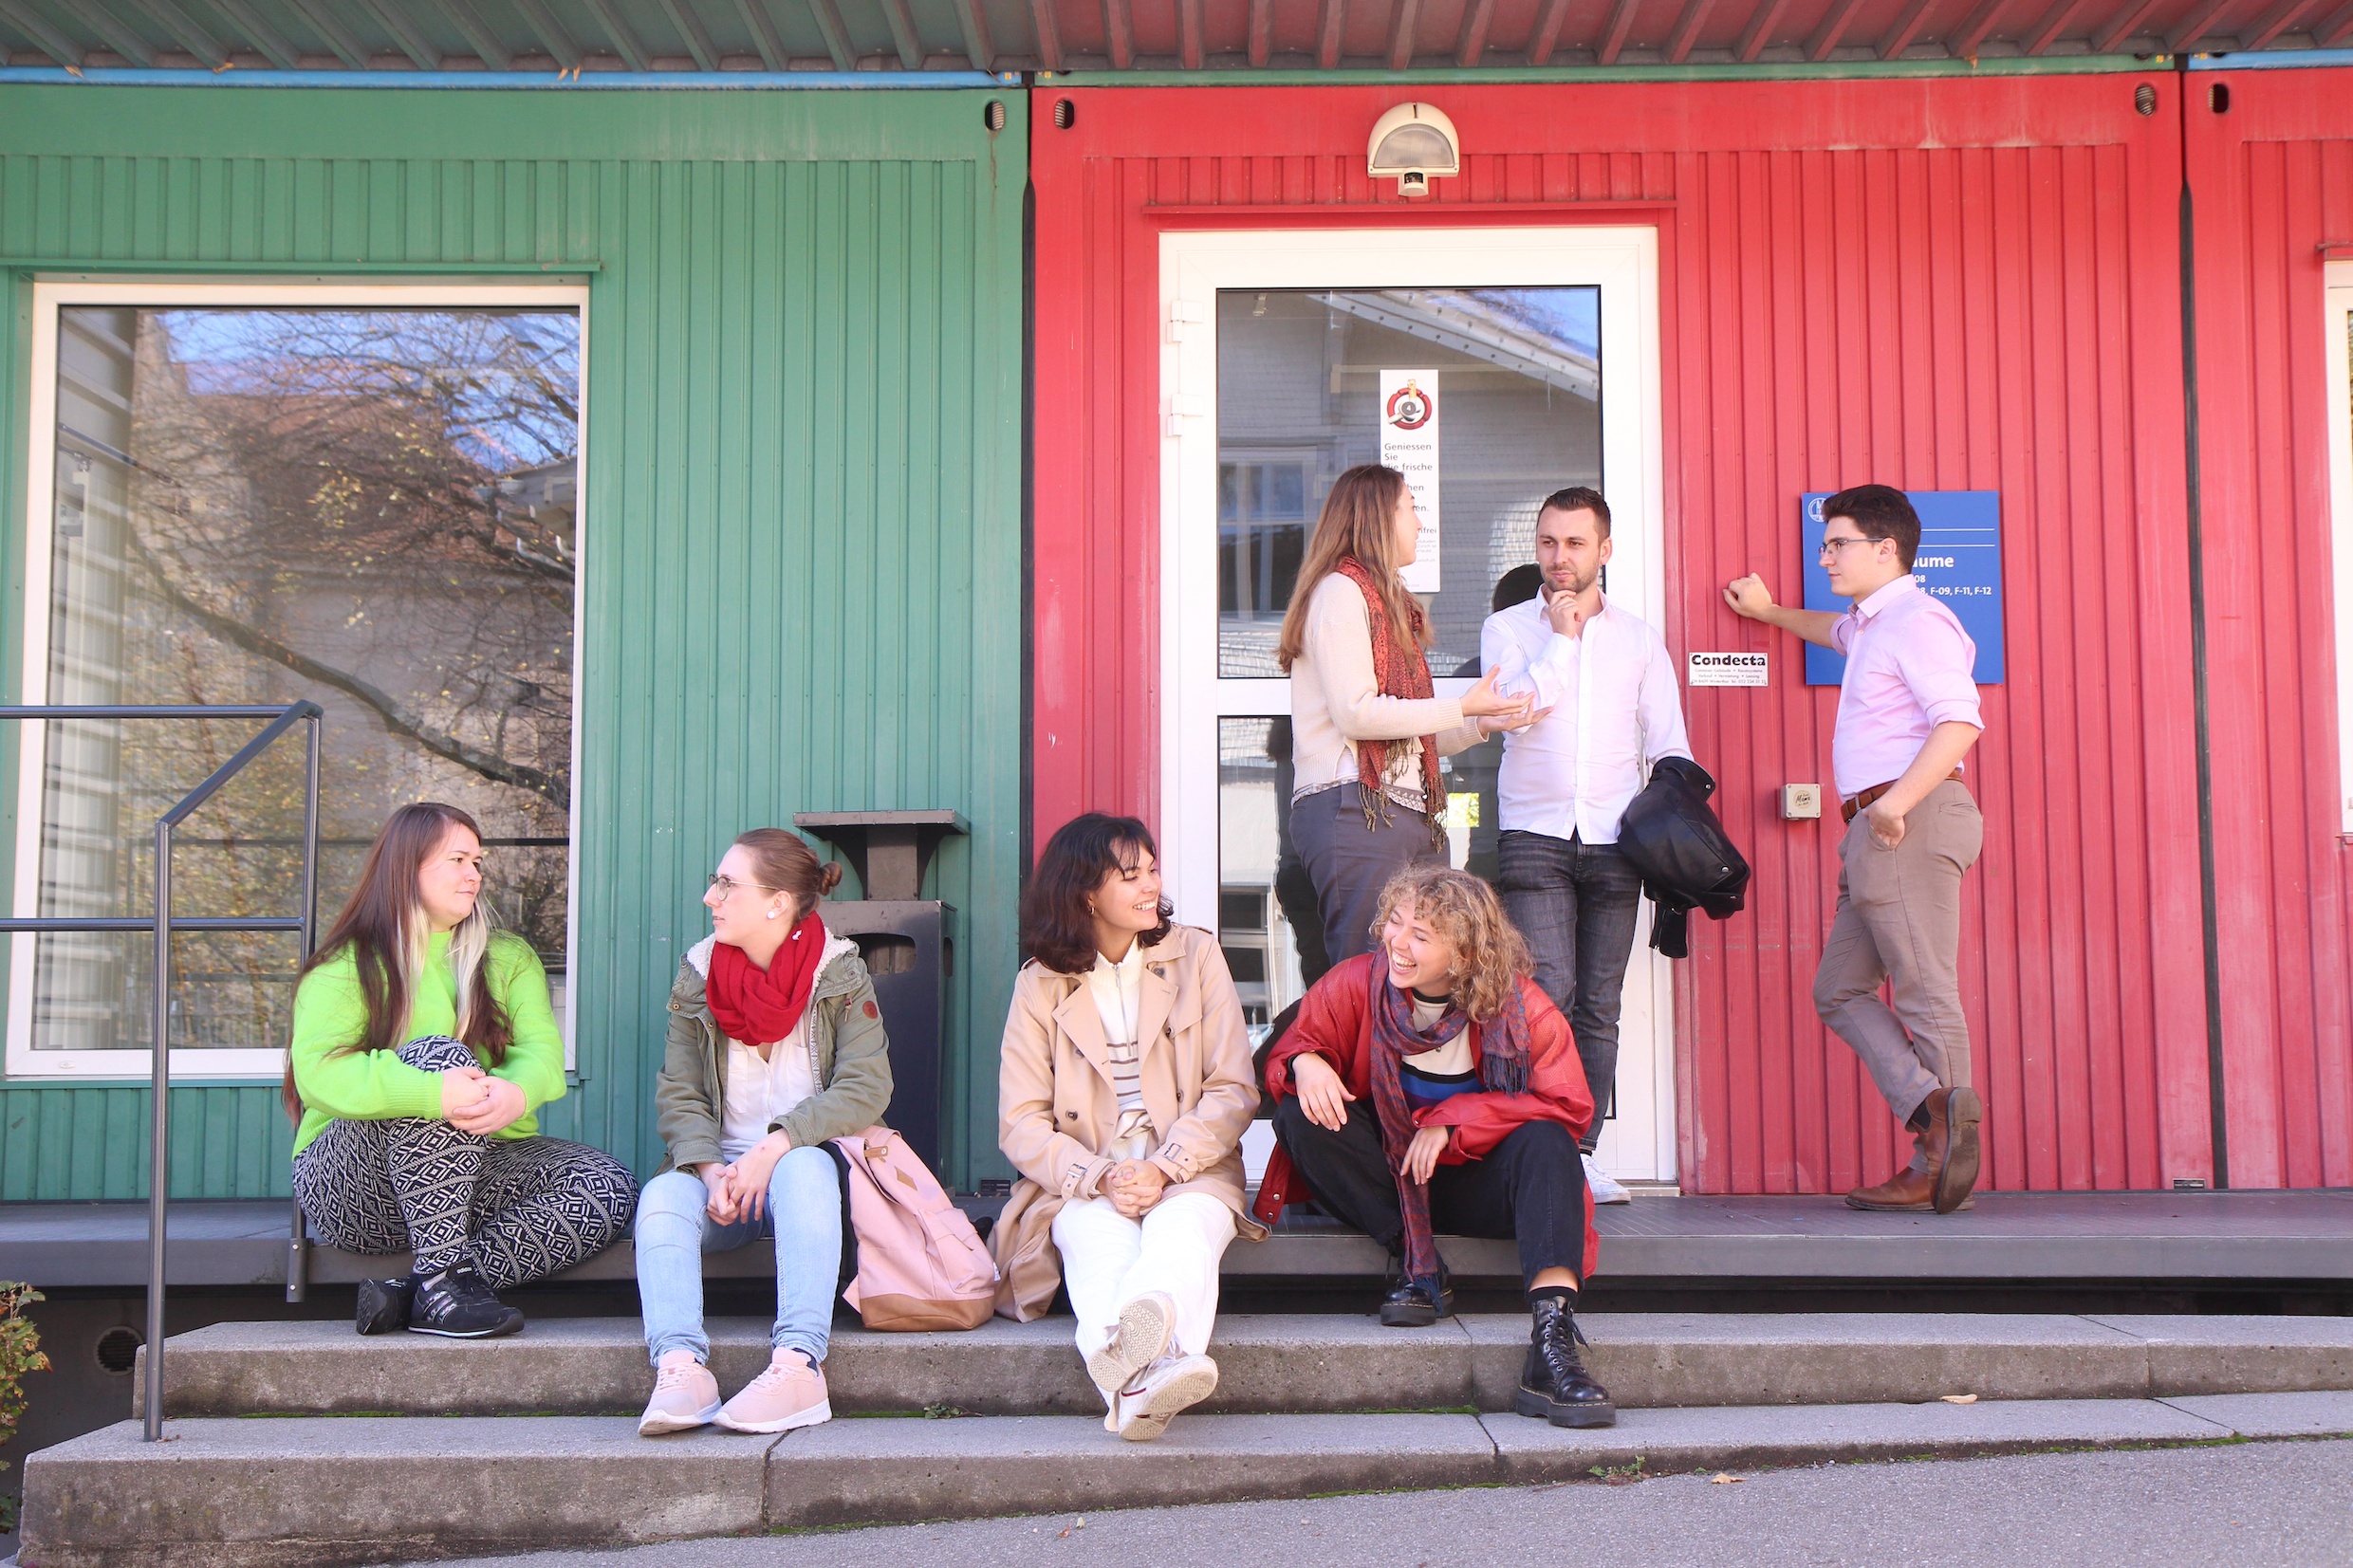 Das Foto zeigt eine Gruppe von Studierenden vor einem rot-grünen Gebäude der Universität Zürich, sie sind ins Gespräch vertieft.